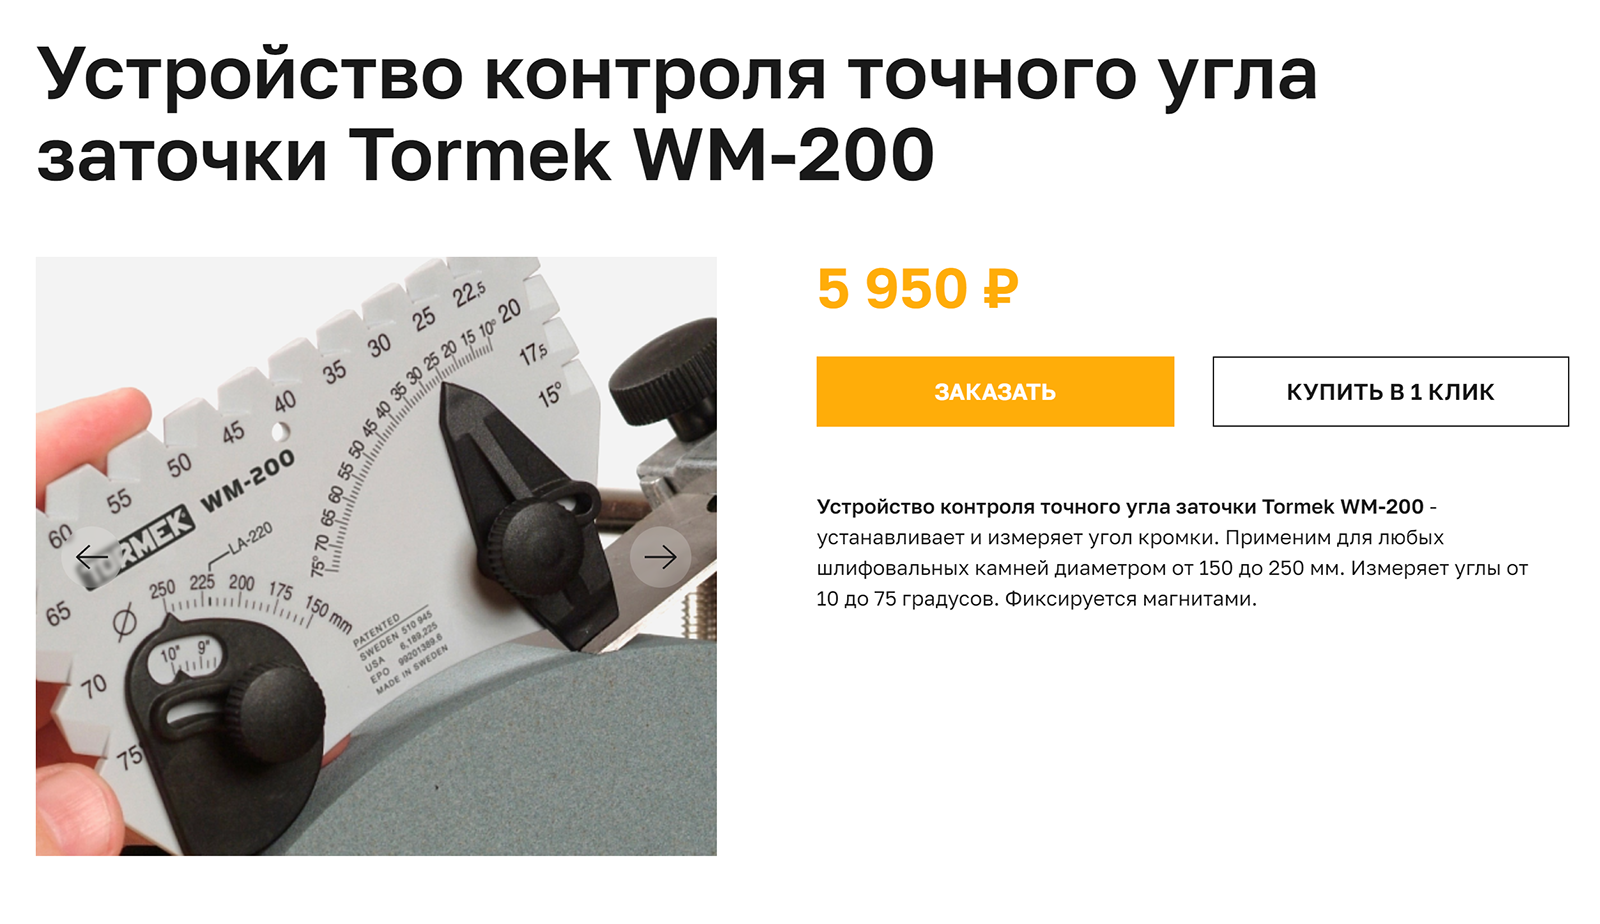 Устройства контроля нужны для профессиональной заточки, поэтому стоят дорого. Источник: grinding.ru